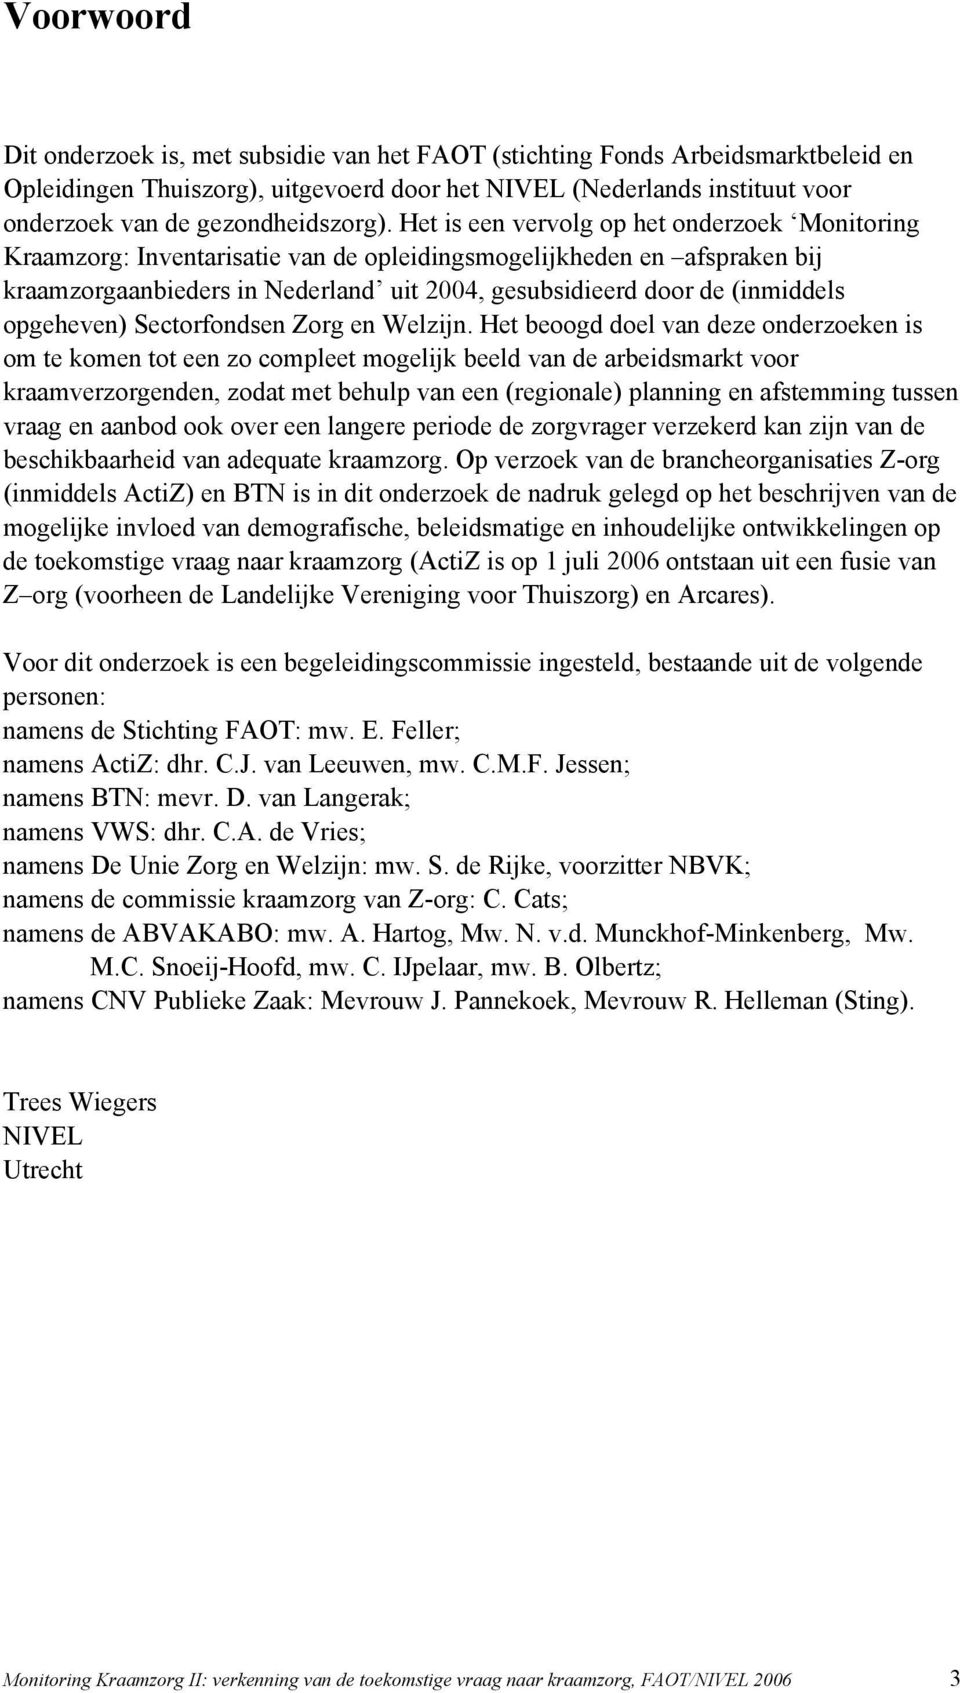 Het is een vervolg op het onderzoek Monitoring Kraamzorg: Inventarisatie van de opleidingsmogelijkheden en afspraken bij kraamzorgaanbieders in Nederland uit 2004, gesubsidieerd door de (inmiddels